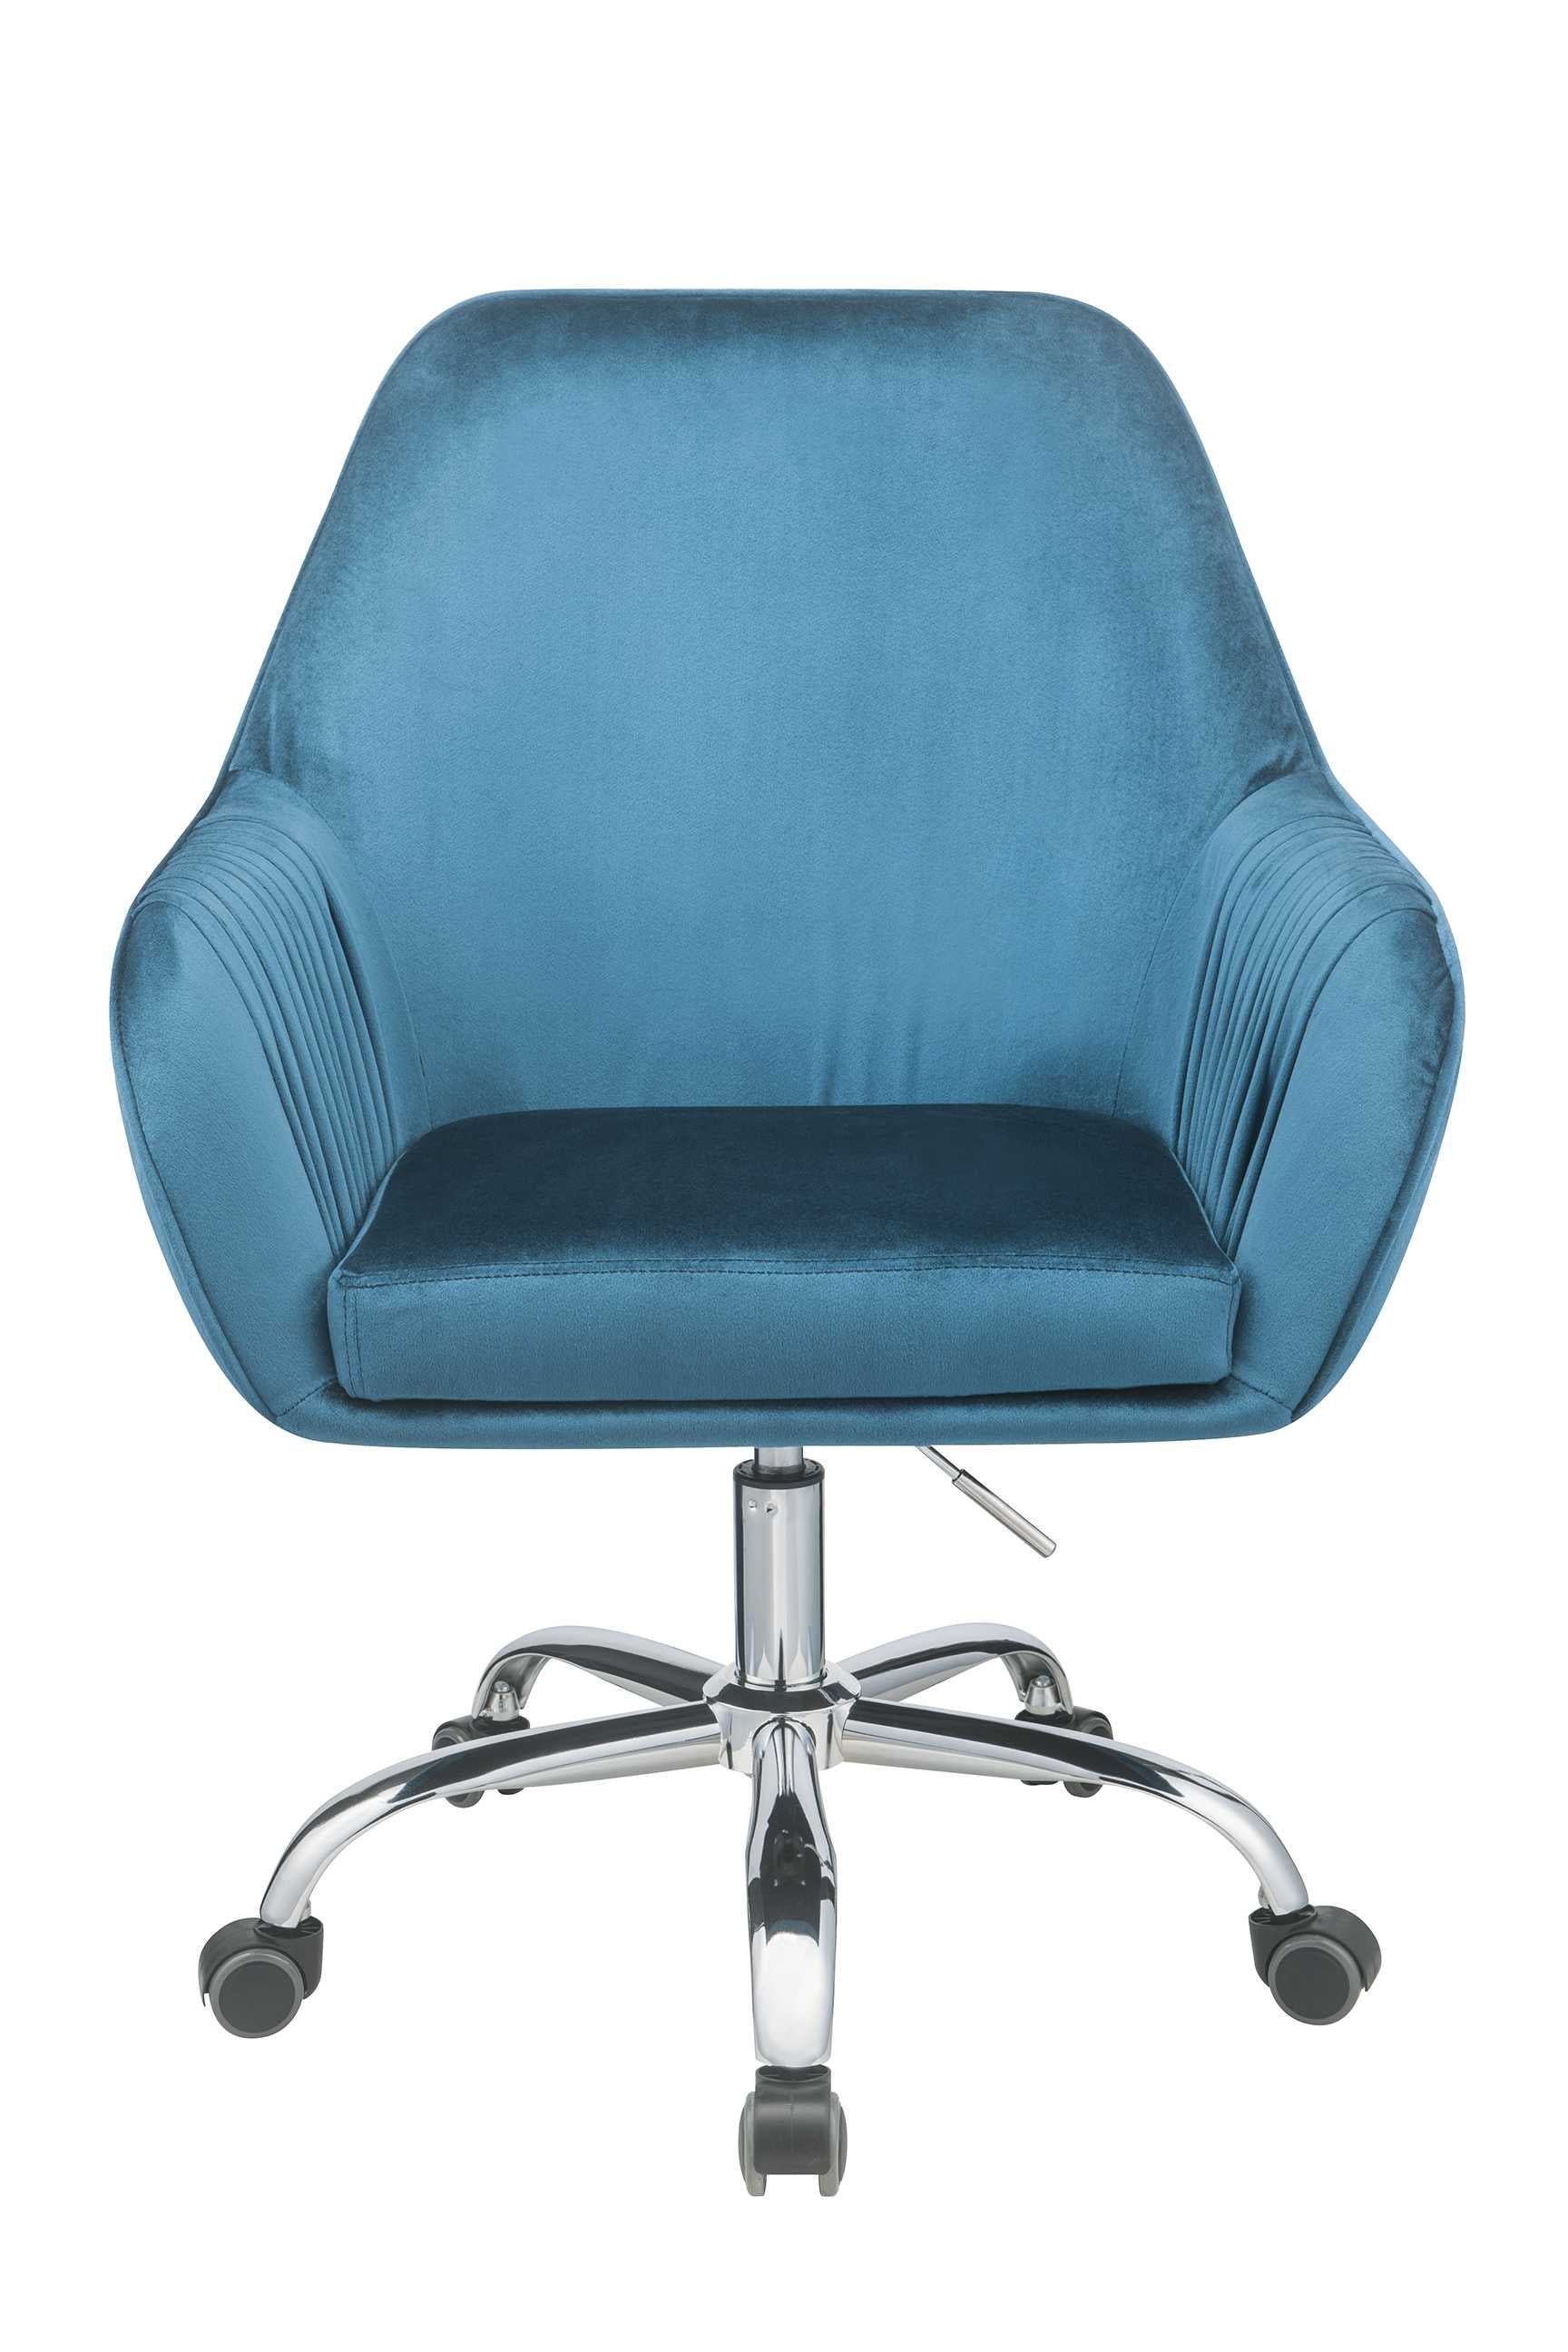 27" X 22" X 37" Peacock Velvet Office Chair